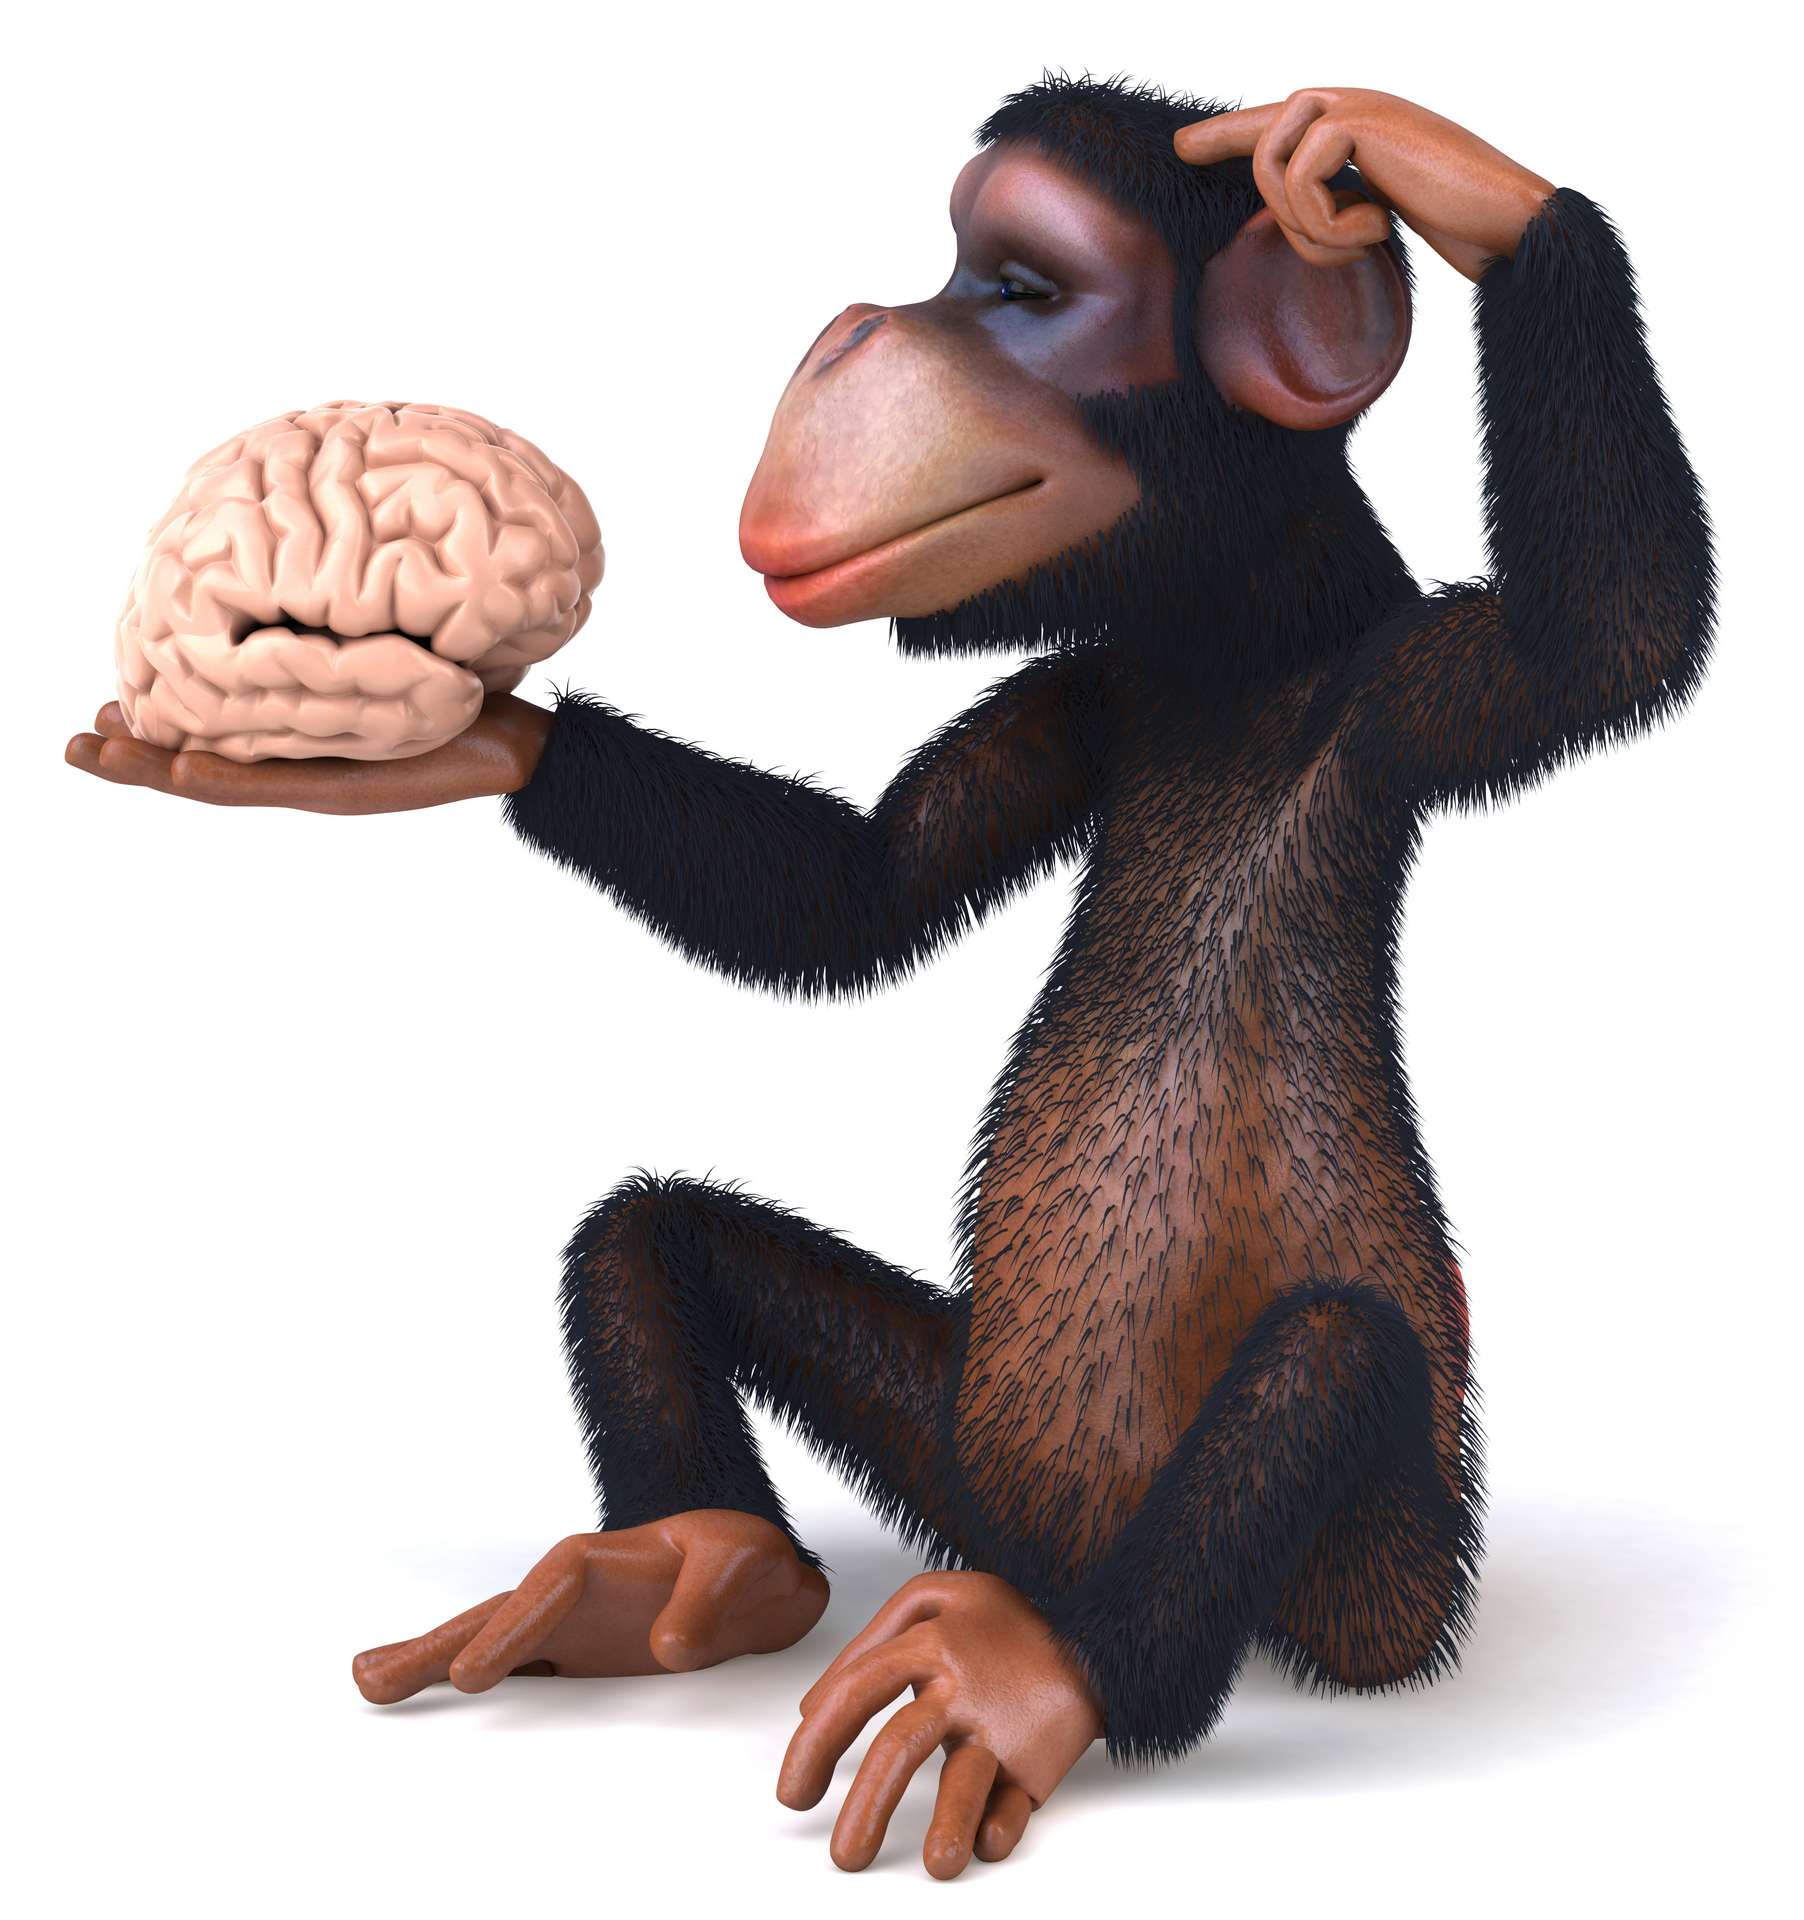 Présentation d'un cerveau de fœtus de chimpanzé - Persée